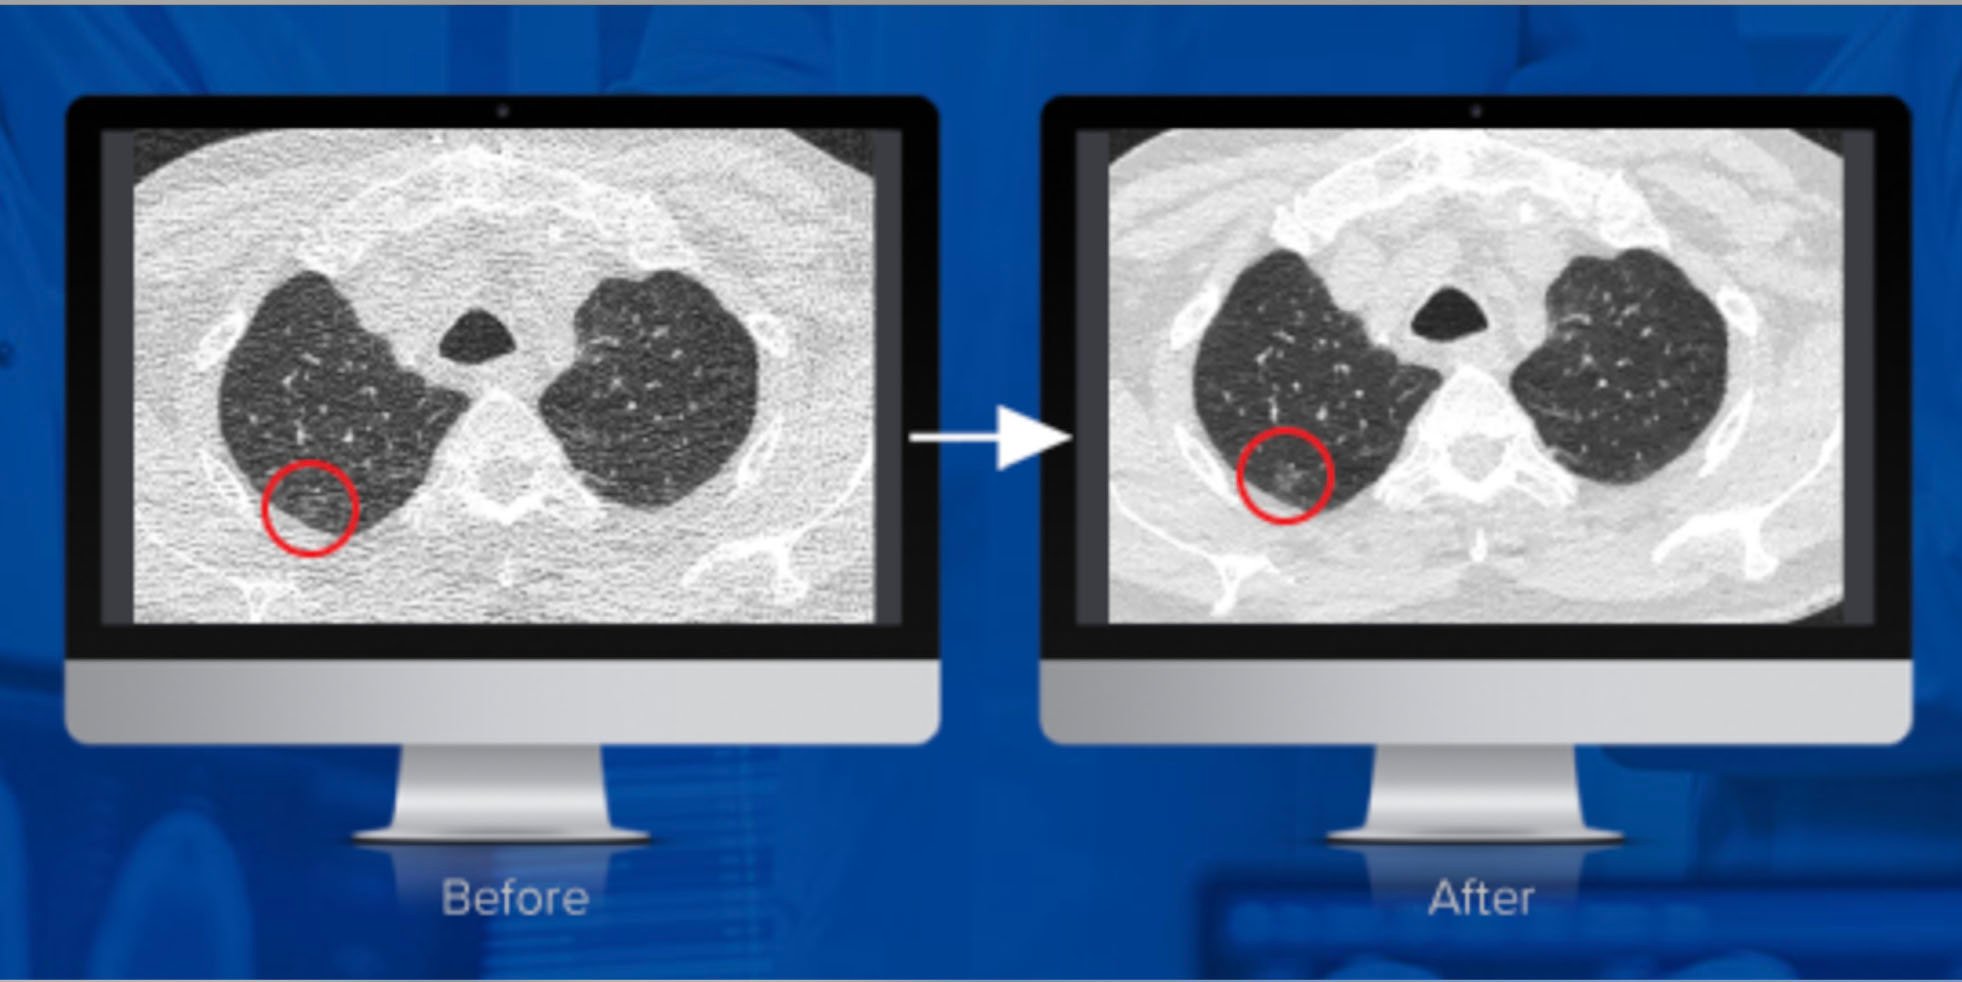 麻省总医院和弗吉尼亚大学的研究得出结论，algomeedica公司的一种颠覆性技术PixelShine显著提高了在降低辐射剂量下获得的CT扫描的诊断质量。在这里，您可以看到应用降噪之前和之后。